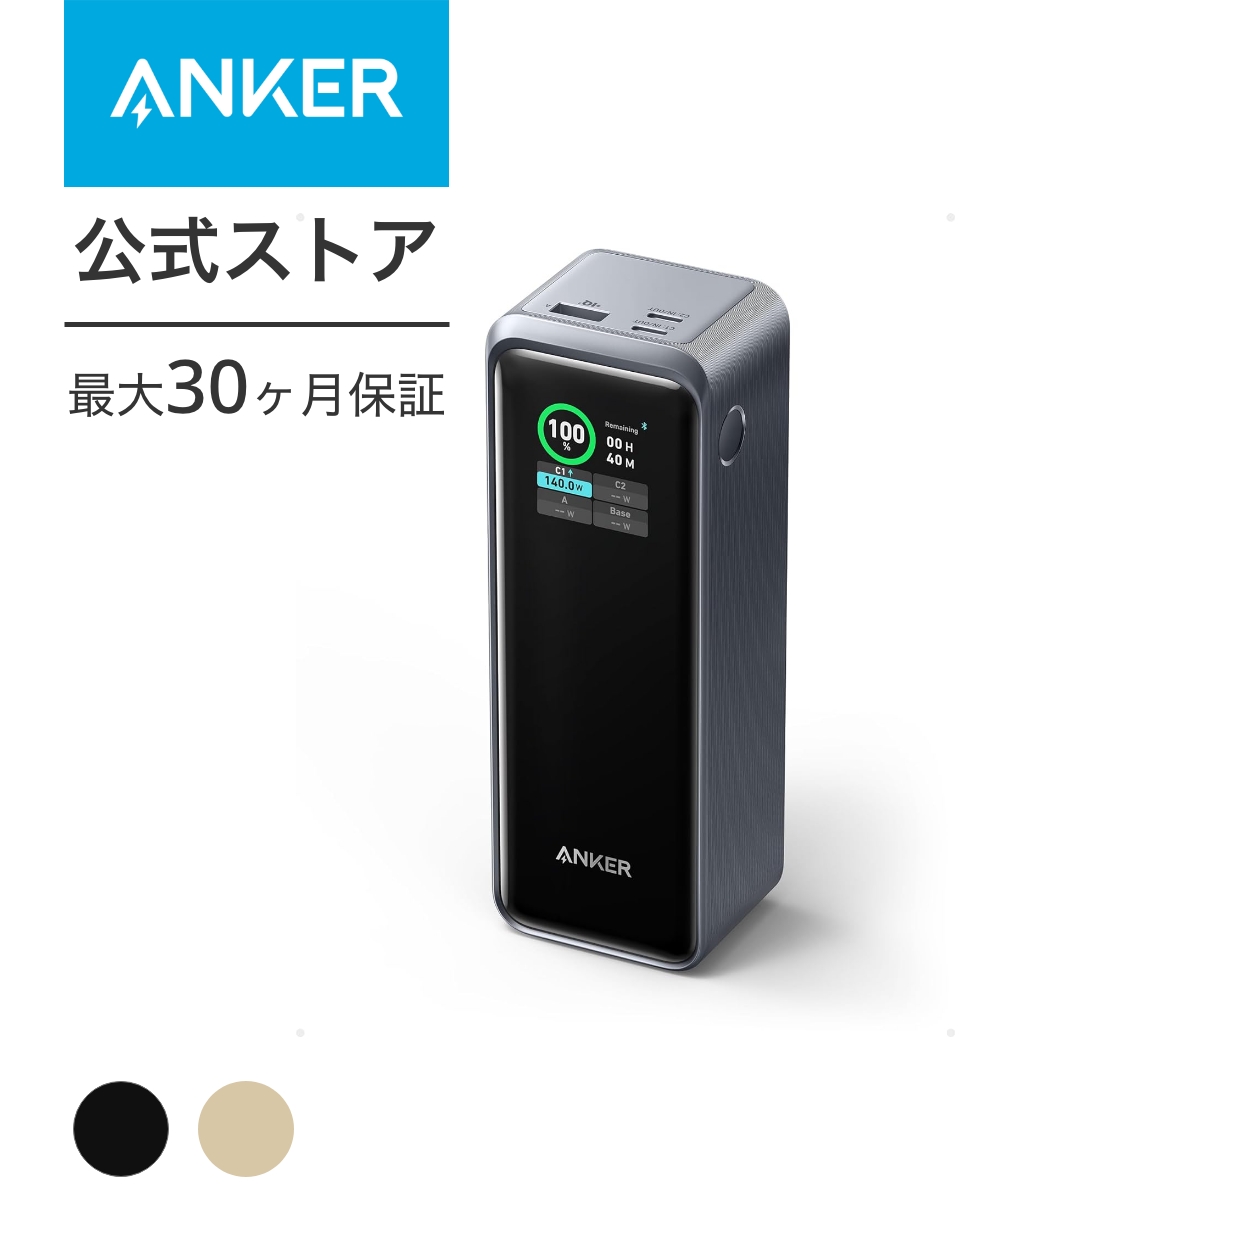 【楽天市場】Anker Prime Power Bank (12000mAh, 130W 